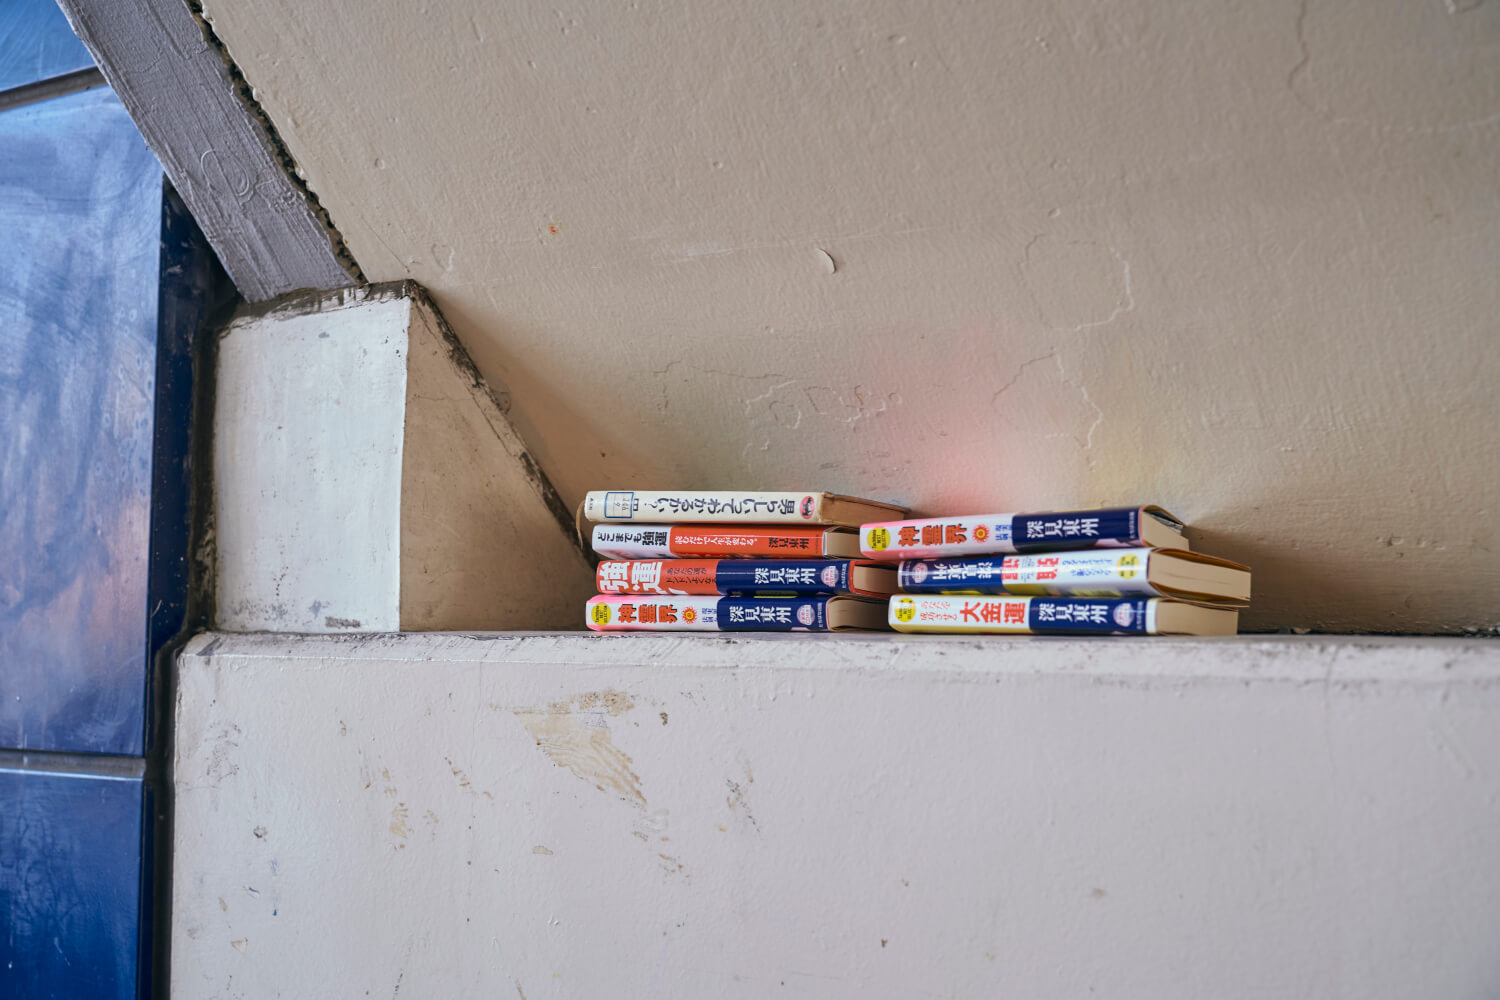 知る人ぞ知る高円寺駅ガード下の通称『渡り鳥文庫』。いわゆる本の無人リサイクルだが、看板も撤去されて詳細は謎のまま。